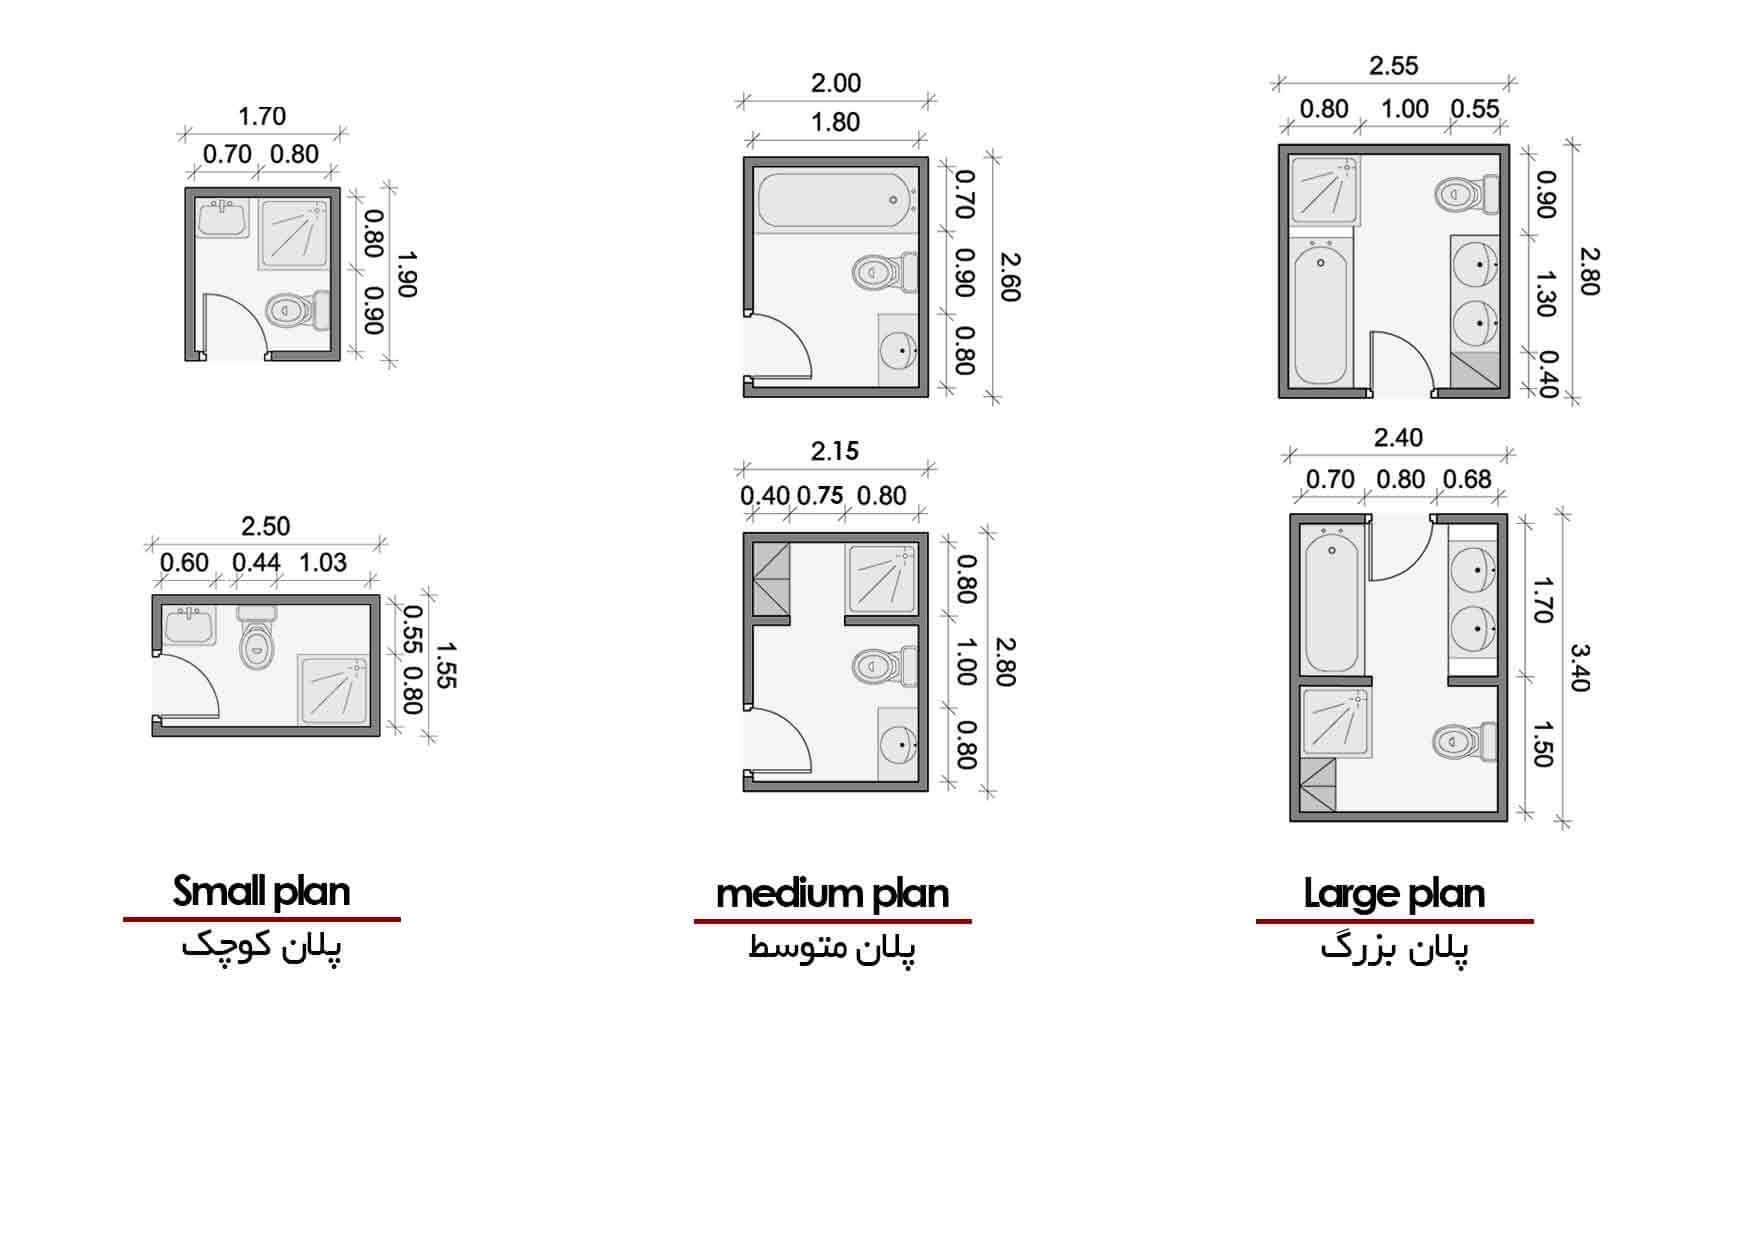 Bathroom plans 1 ابعاد و استاندارد فضاهای مسکونی